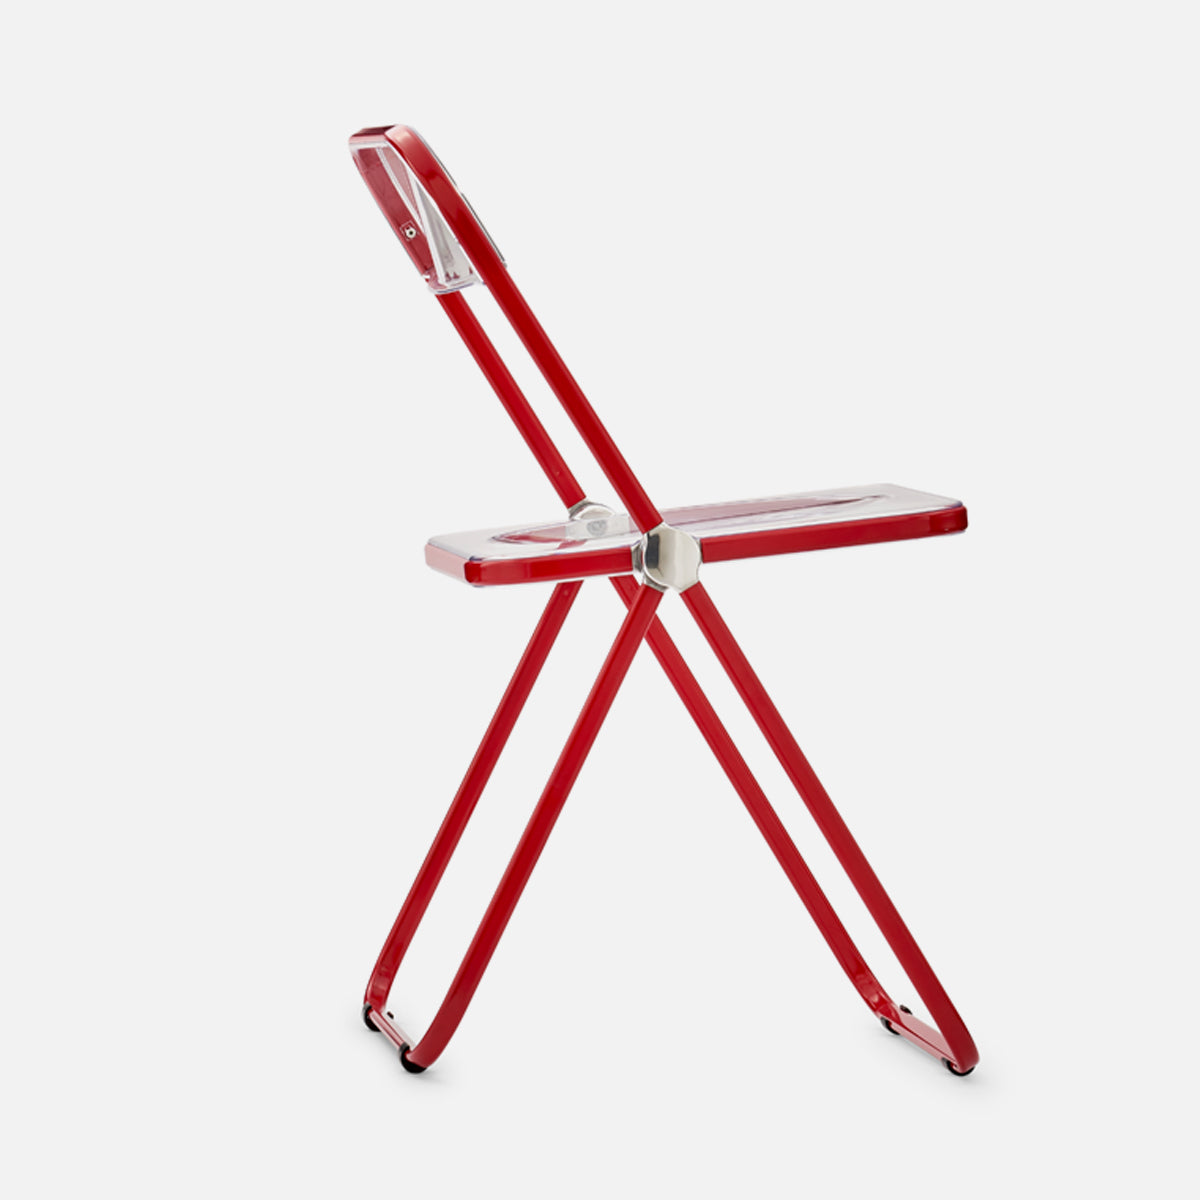 Anonima Castelli Plia Chair Red Clear